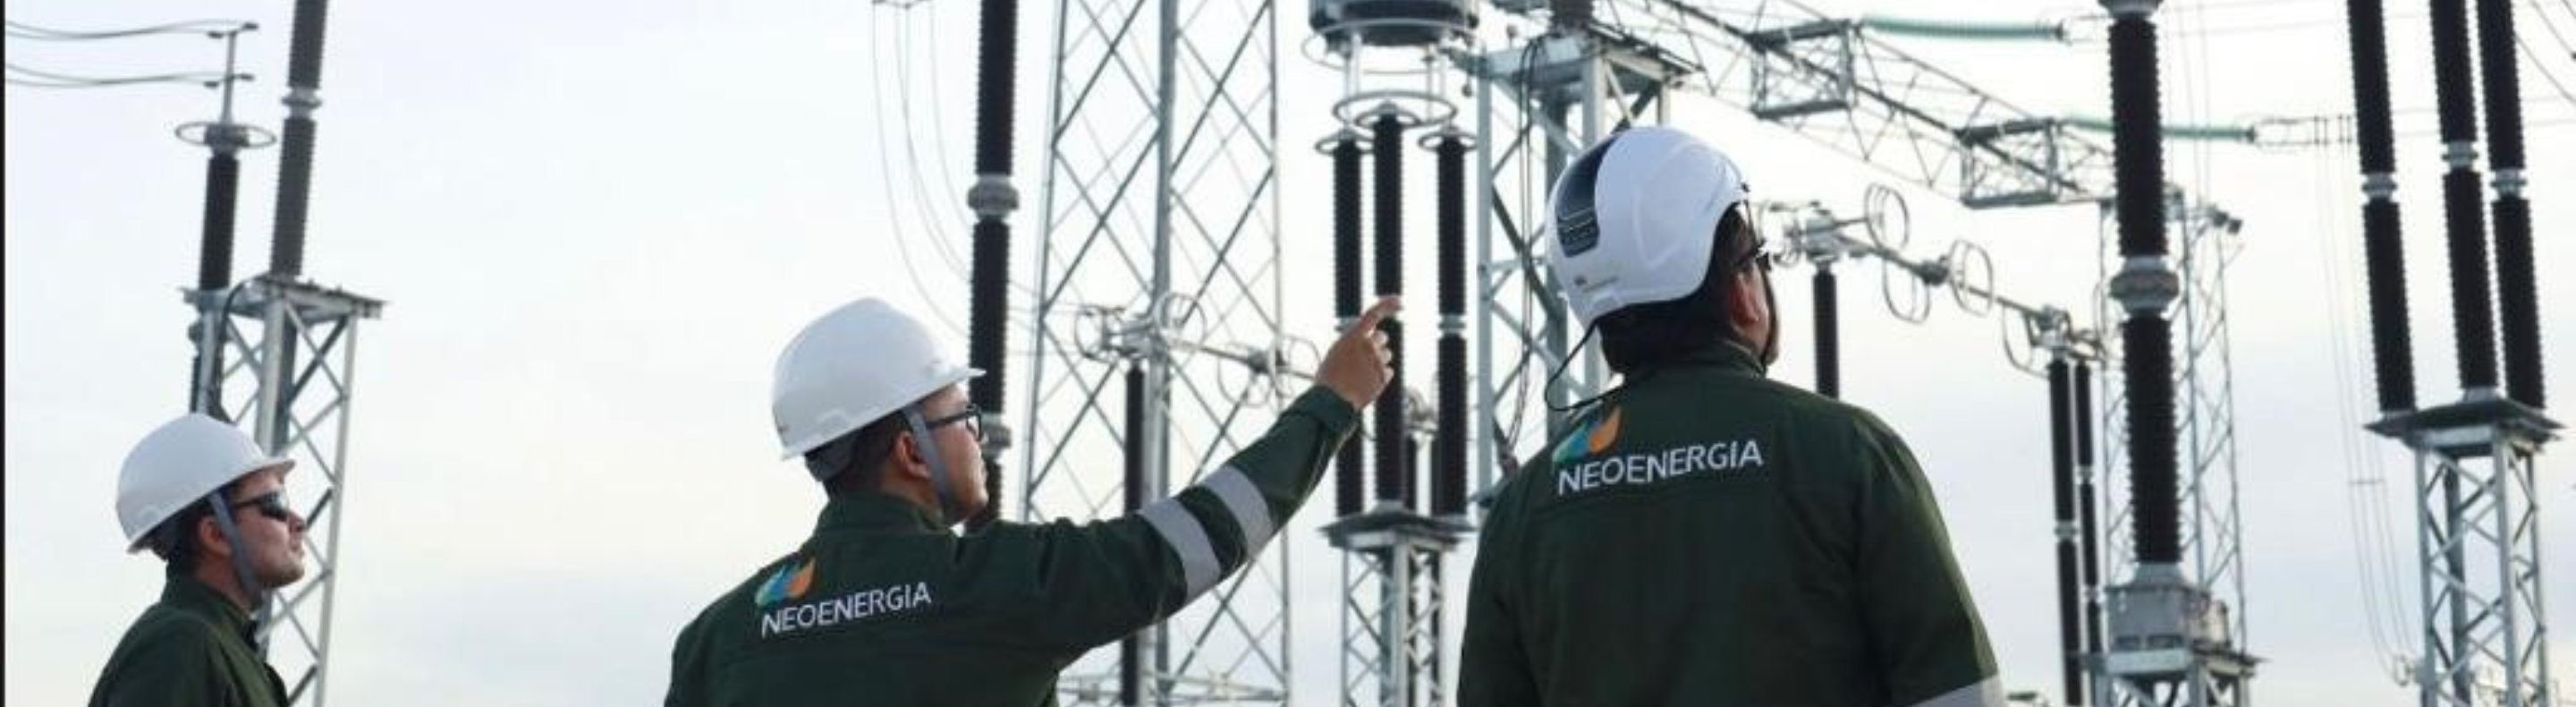 Neoenergia conclui energização de linha de transmissão na Bahia